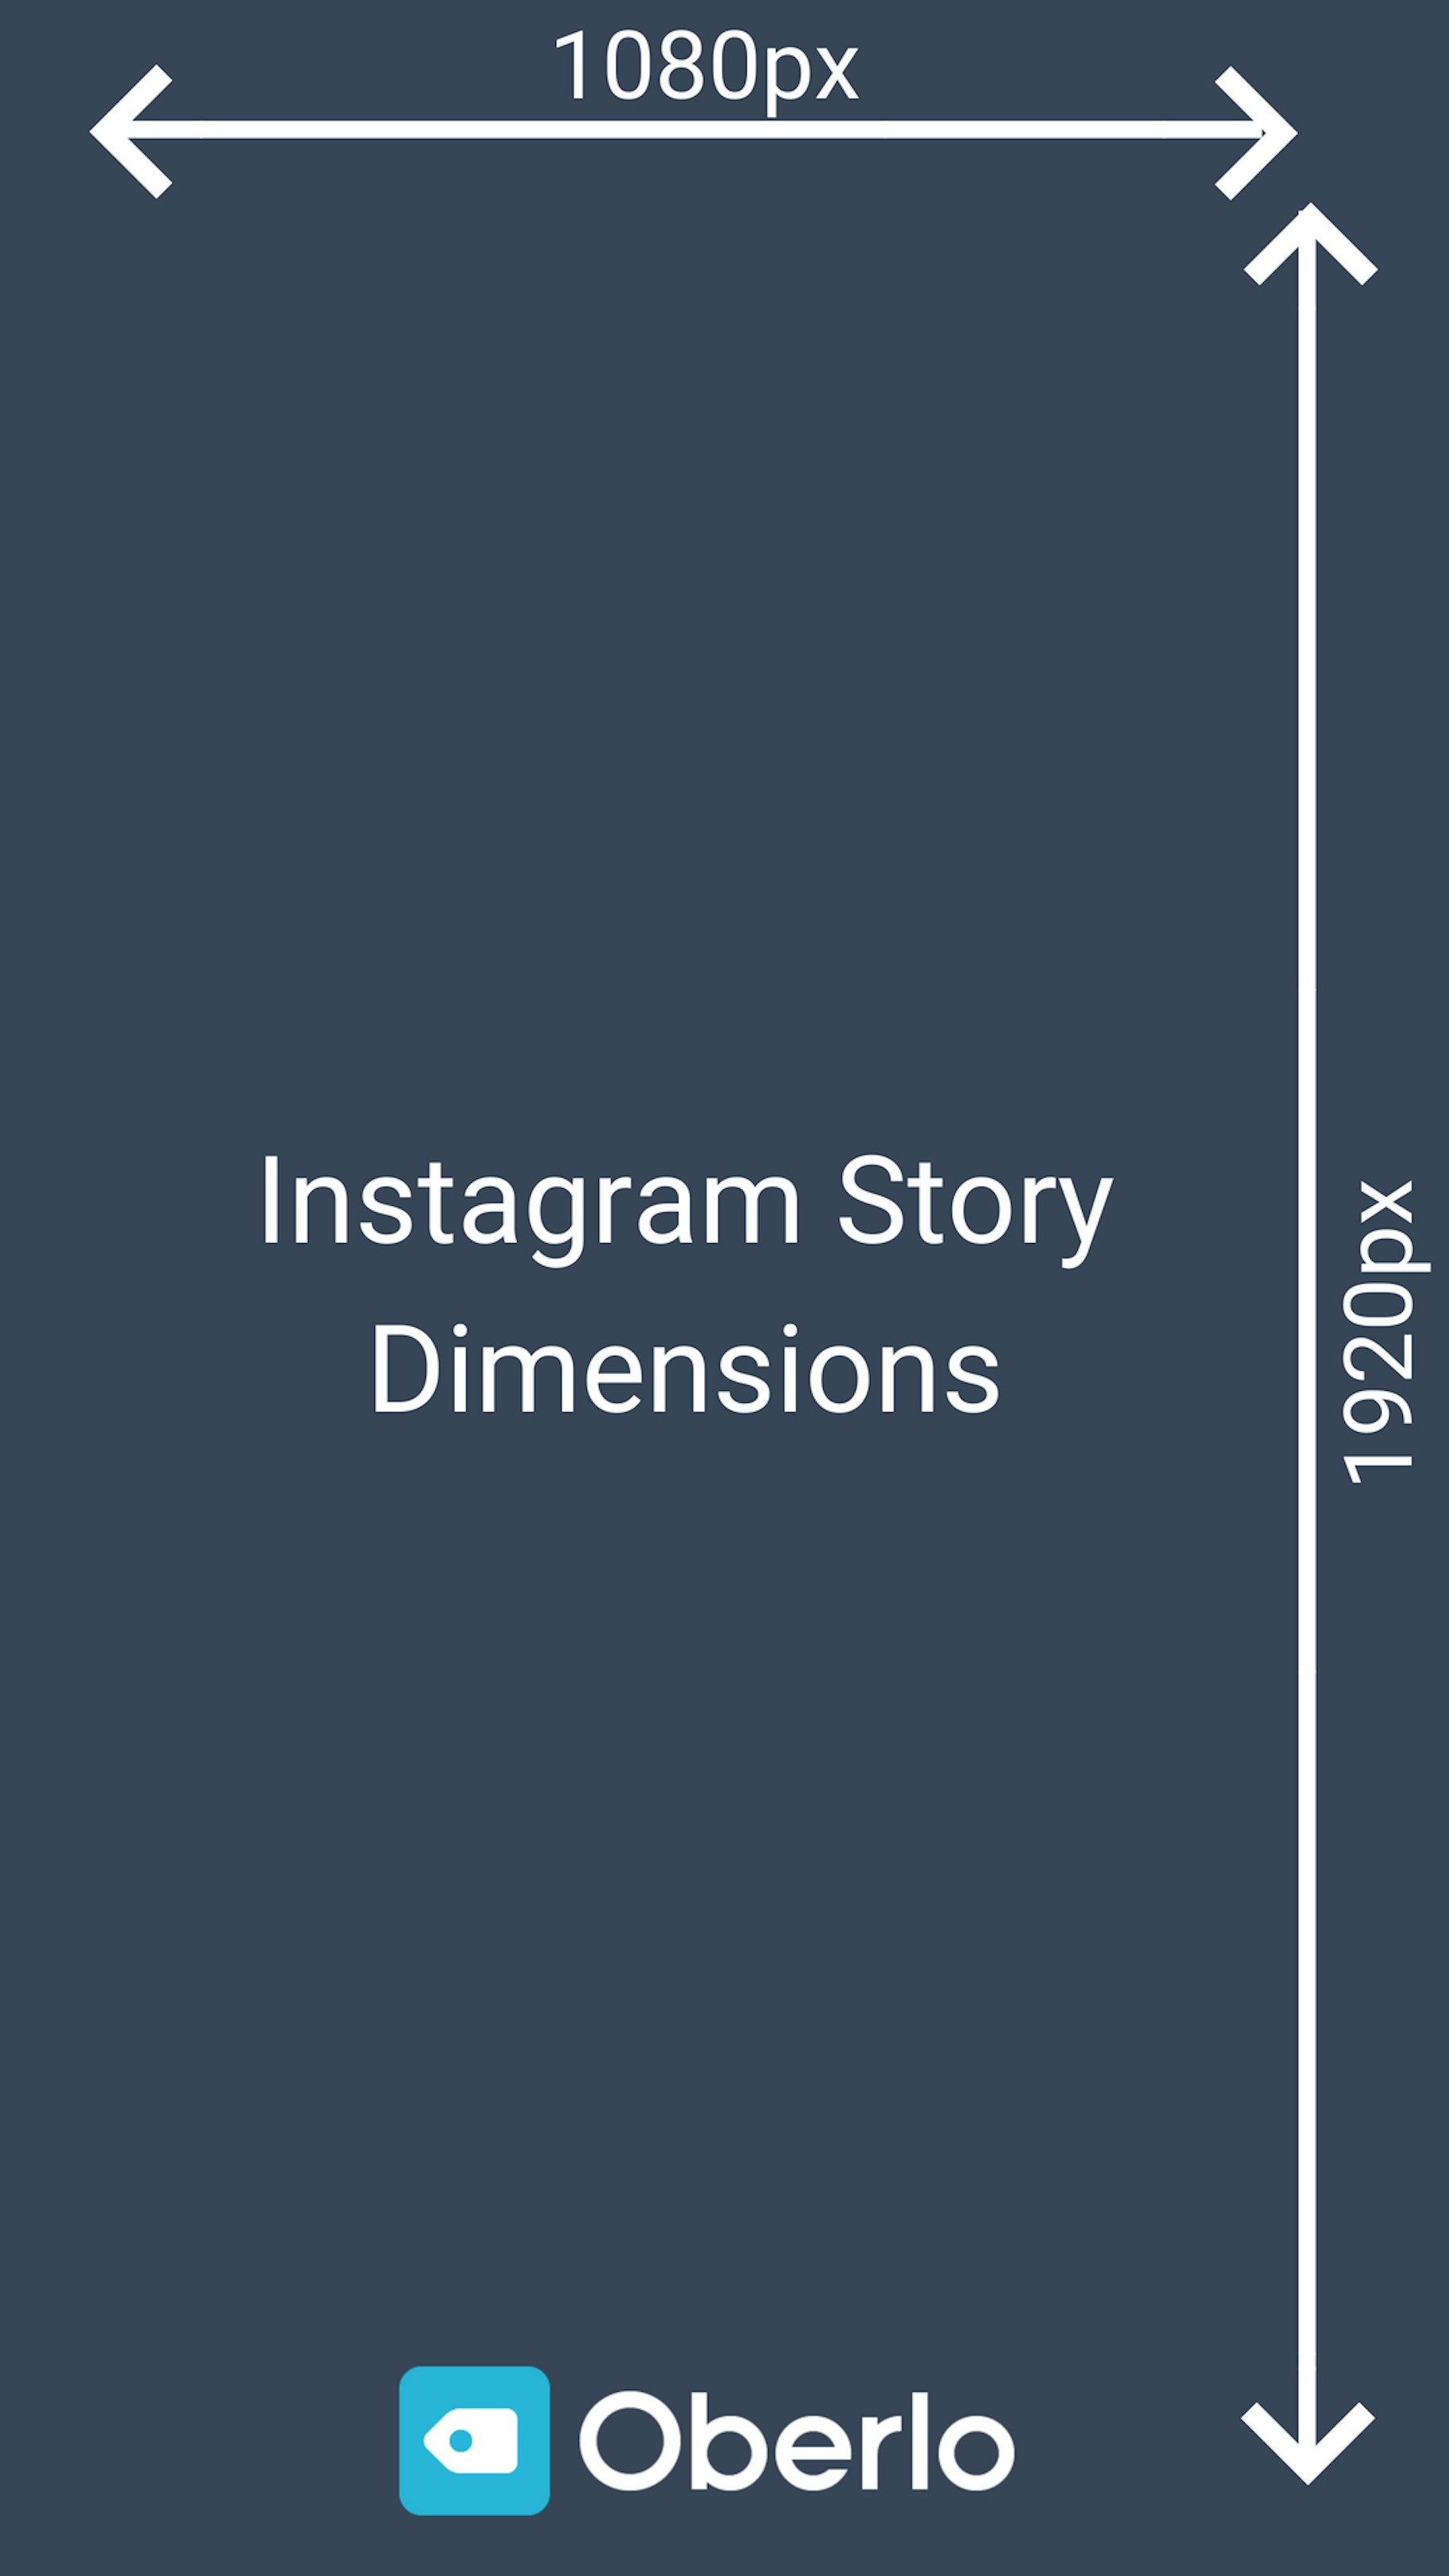  Instagram Stories méretek